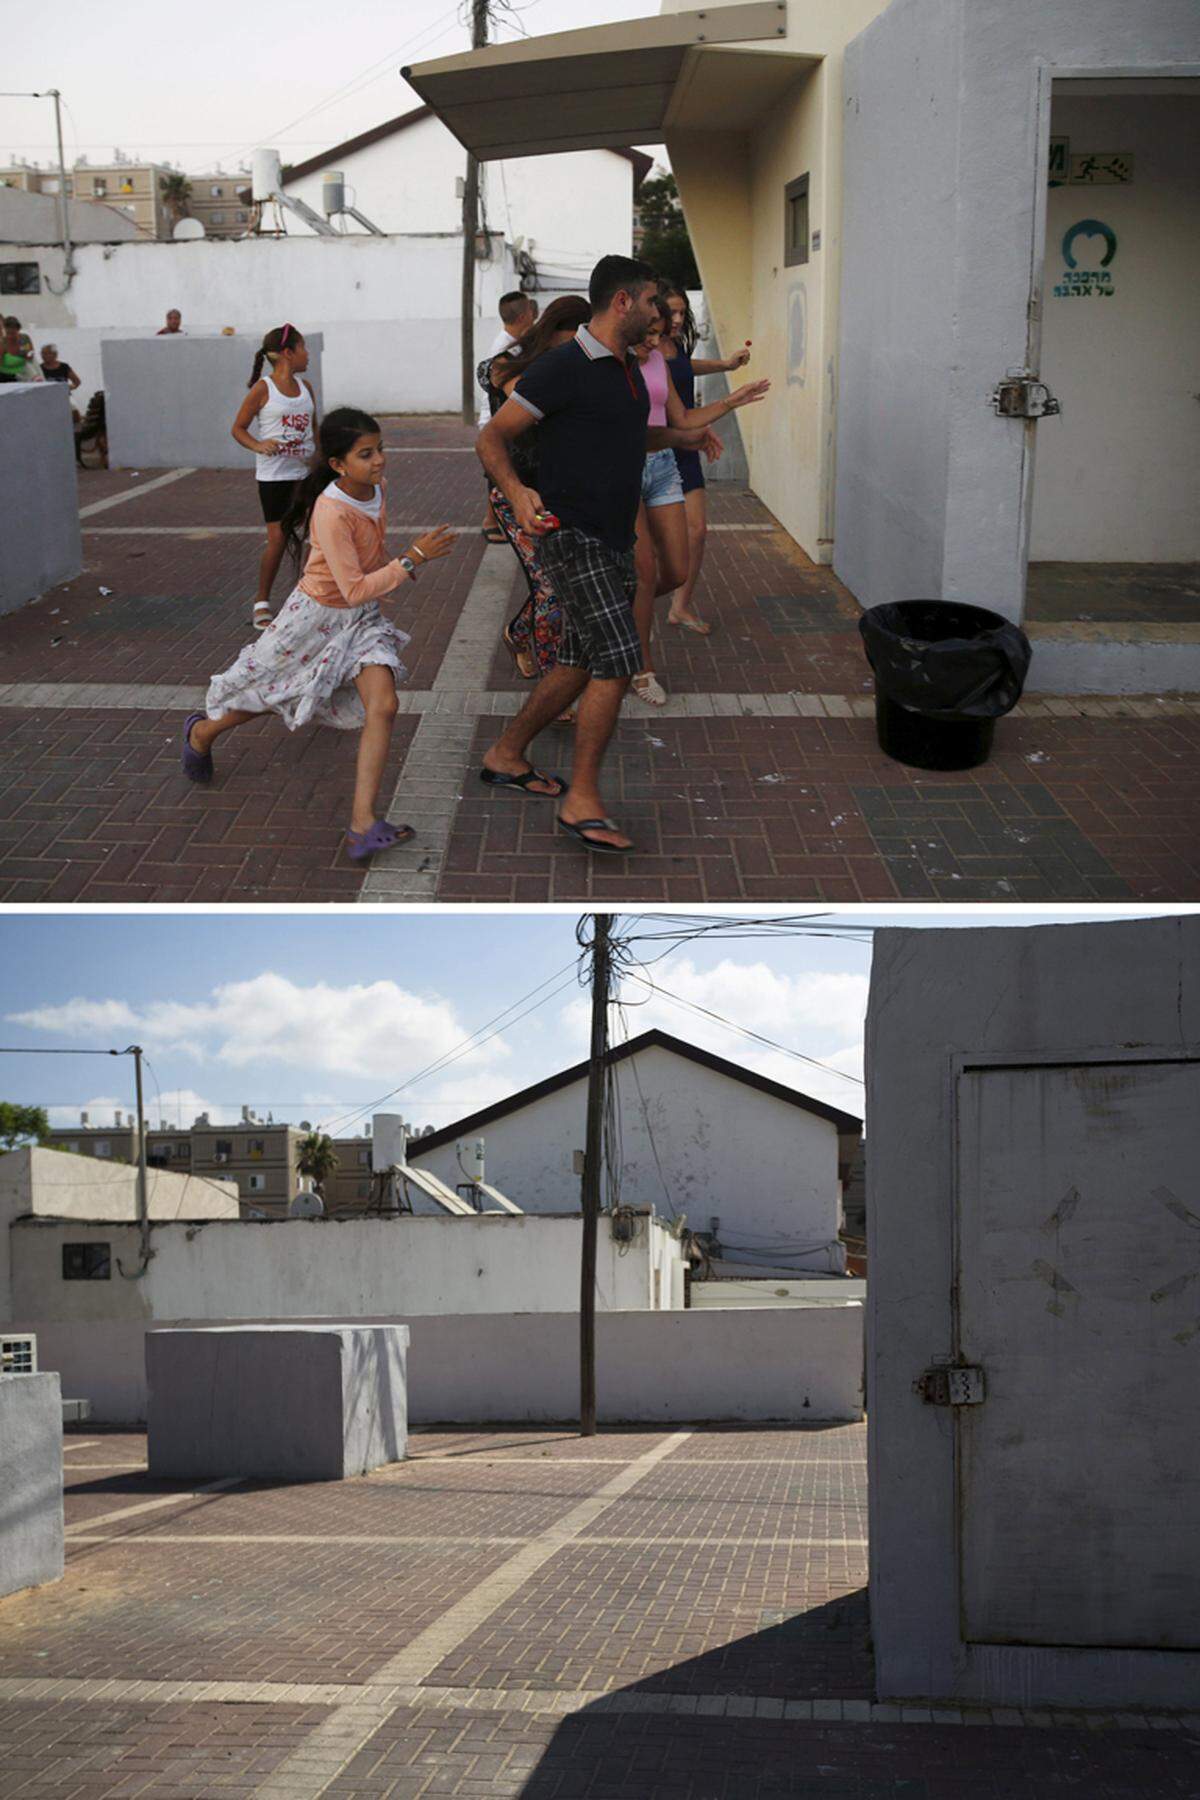 Ein Raketenalarm am 9. Juli 2014 in der israelischen Stadt Ashkelon. Eine Familie läuft in Richtung Schutzbunker, darunter der Ort ein Jahr später fotografiert.